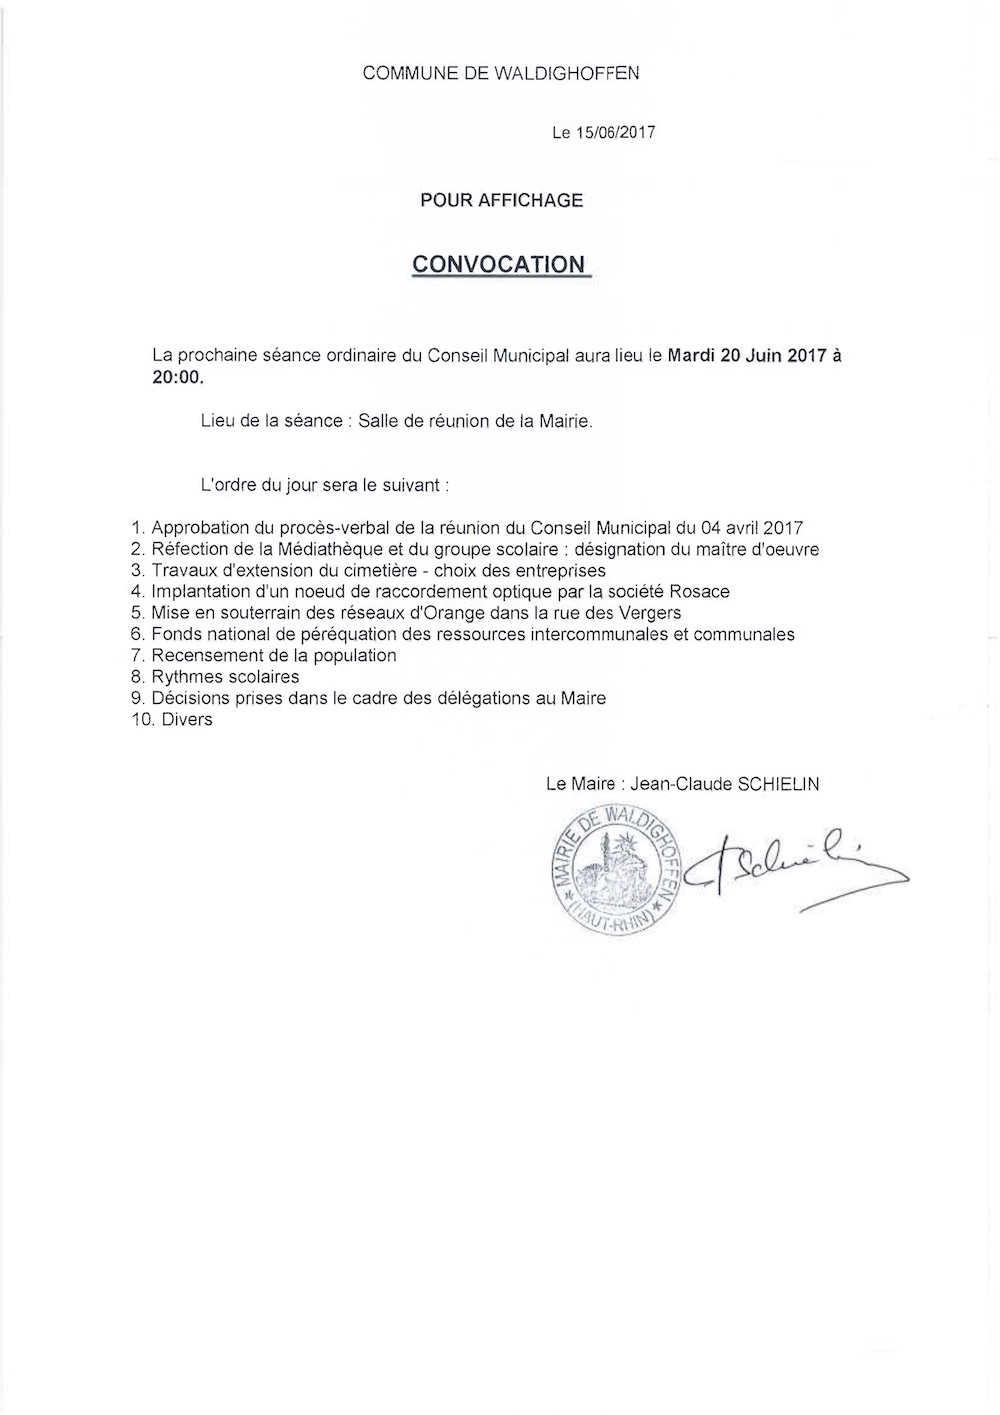 Convocation du Conseil Municipal le 20.06.2017 